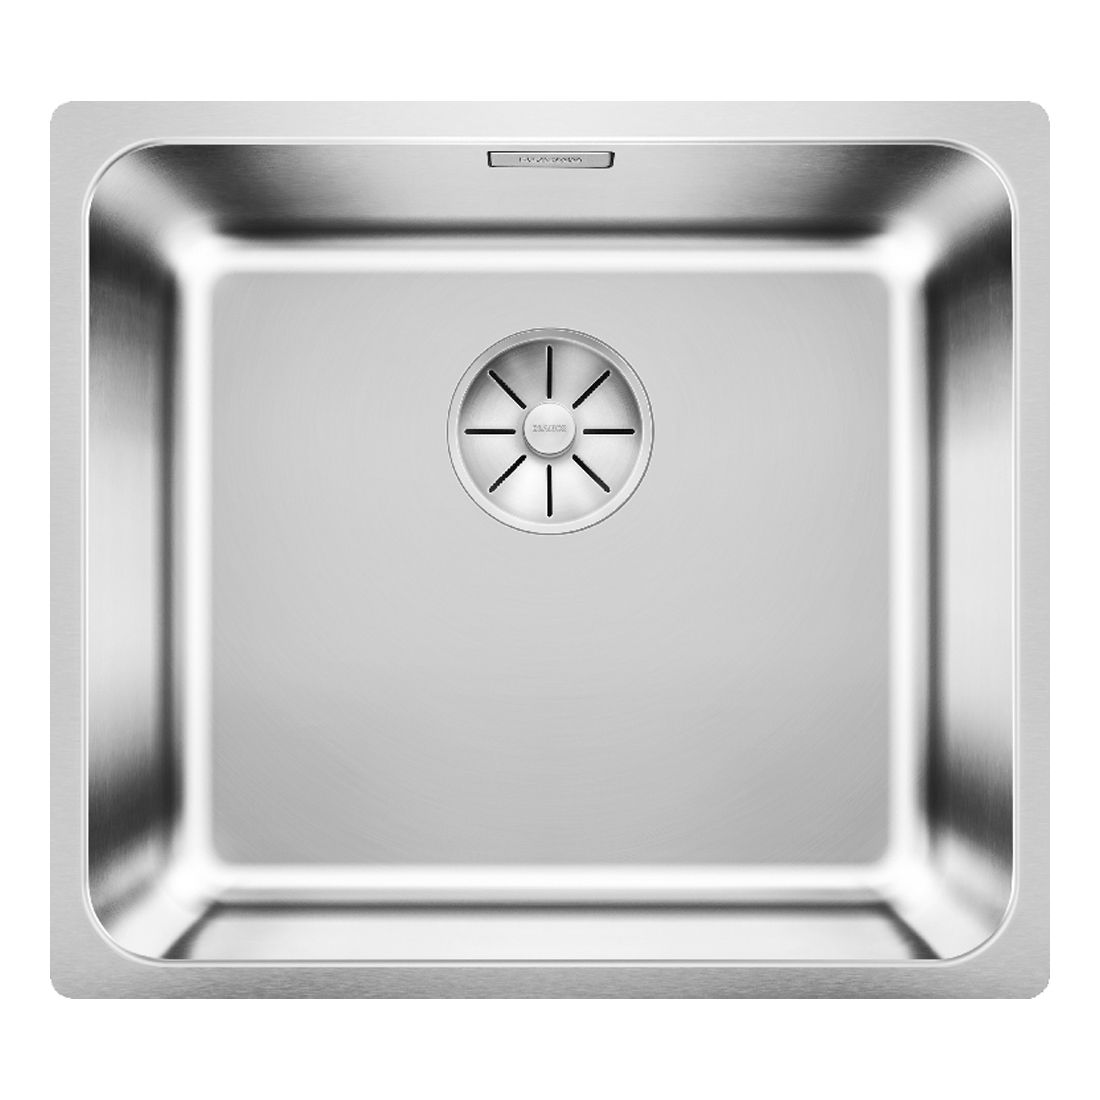 Кухонная мойка Blanco Solis 450-U полированная сталь